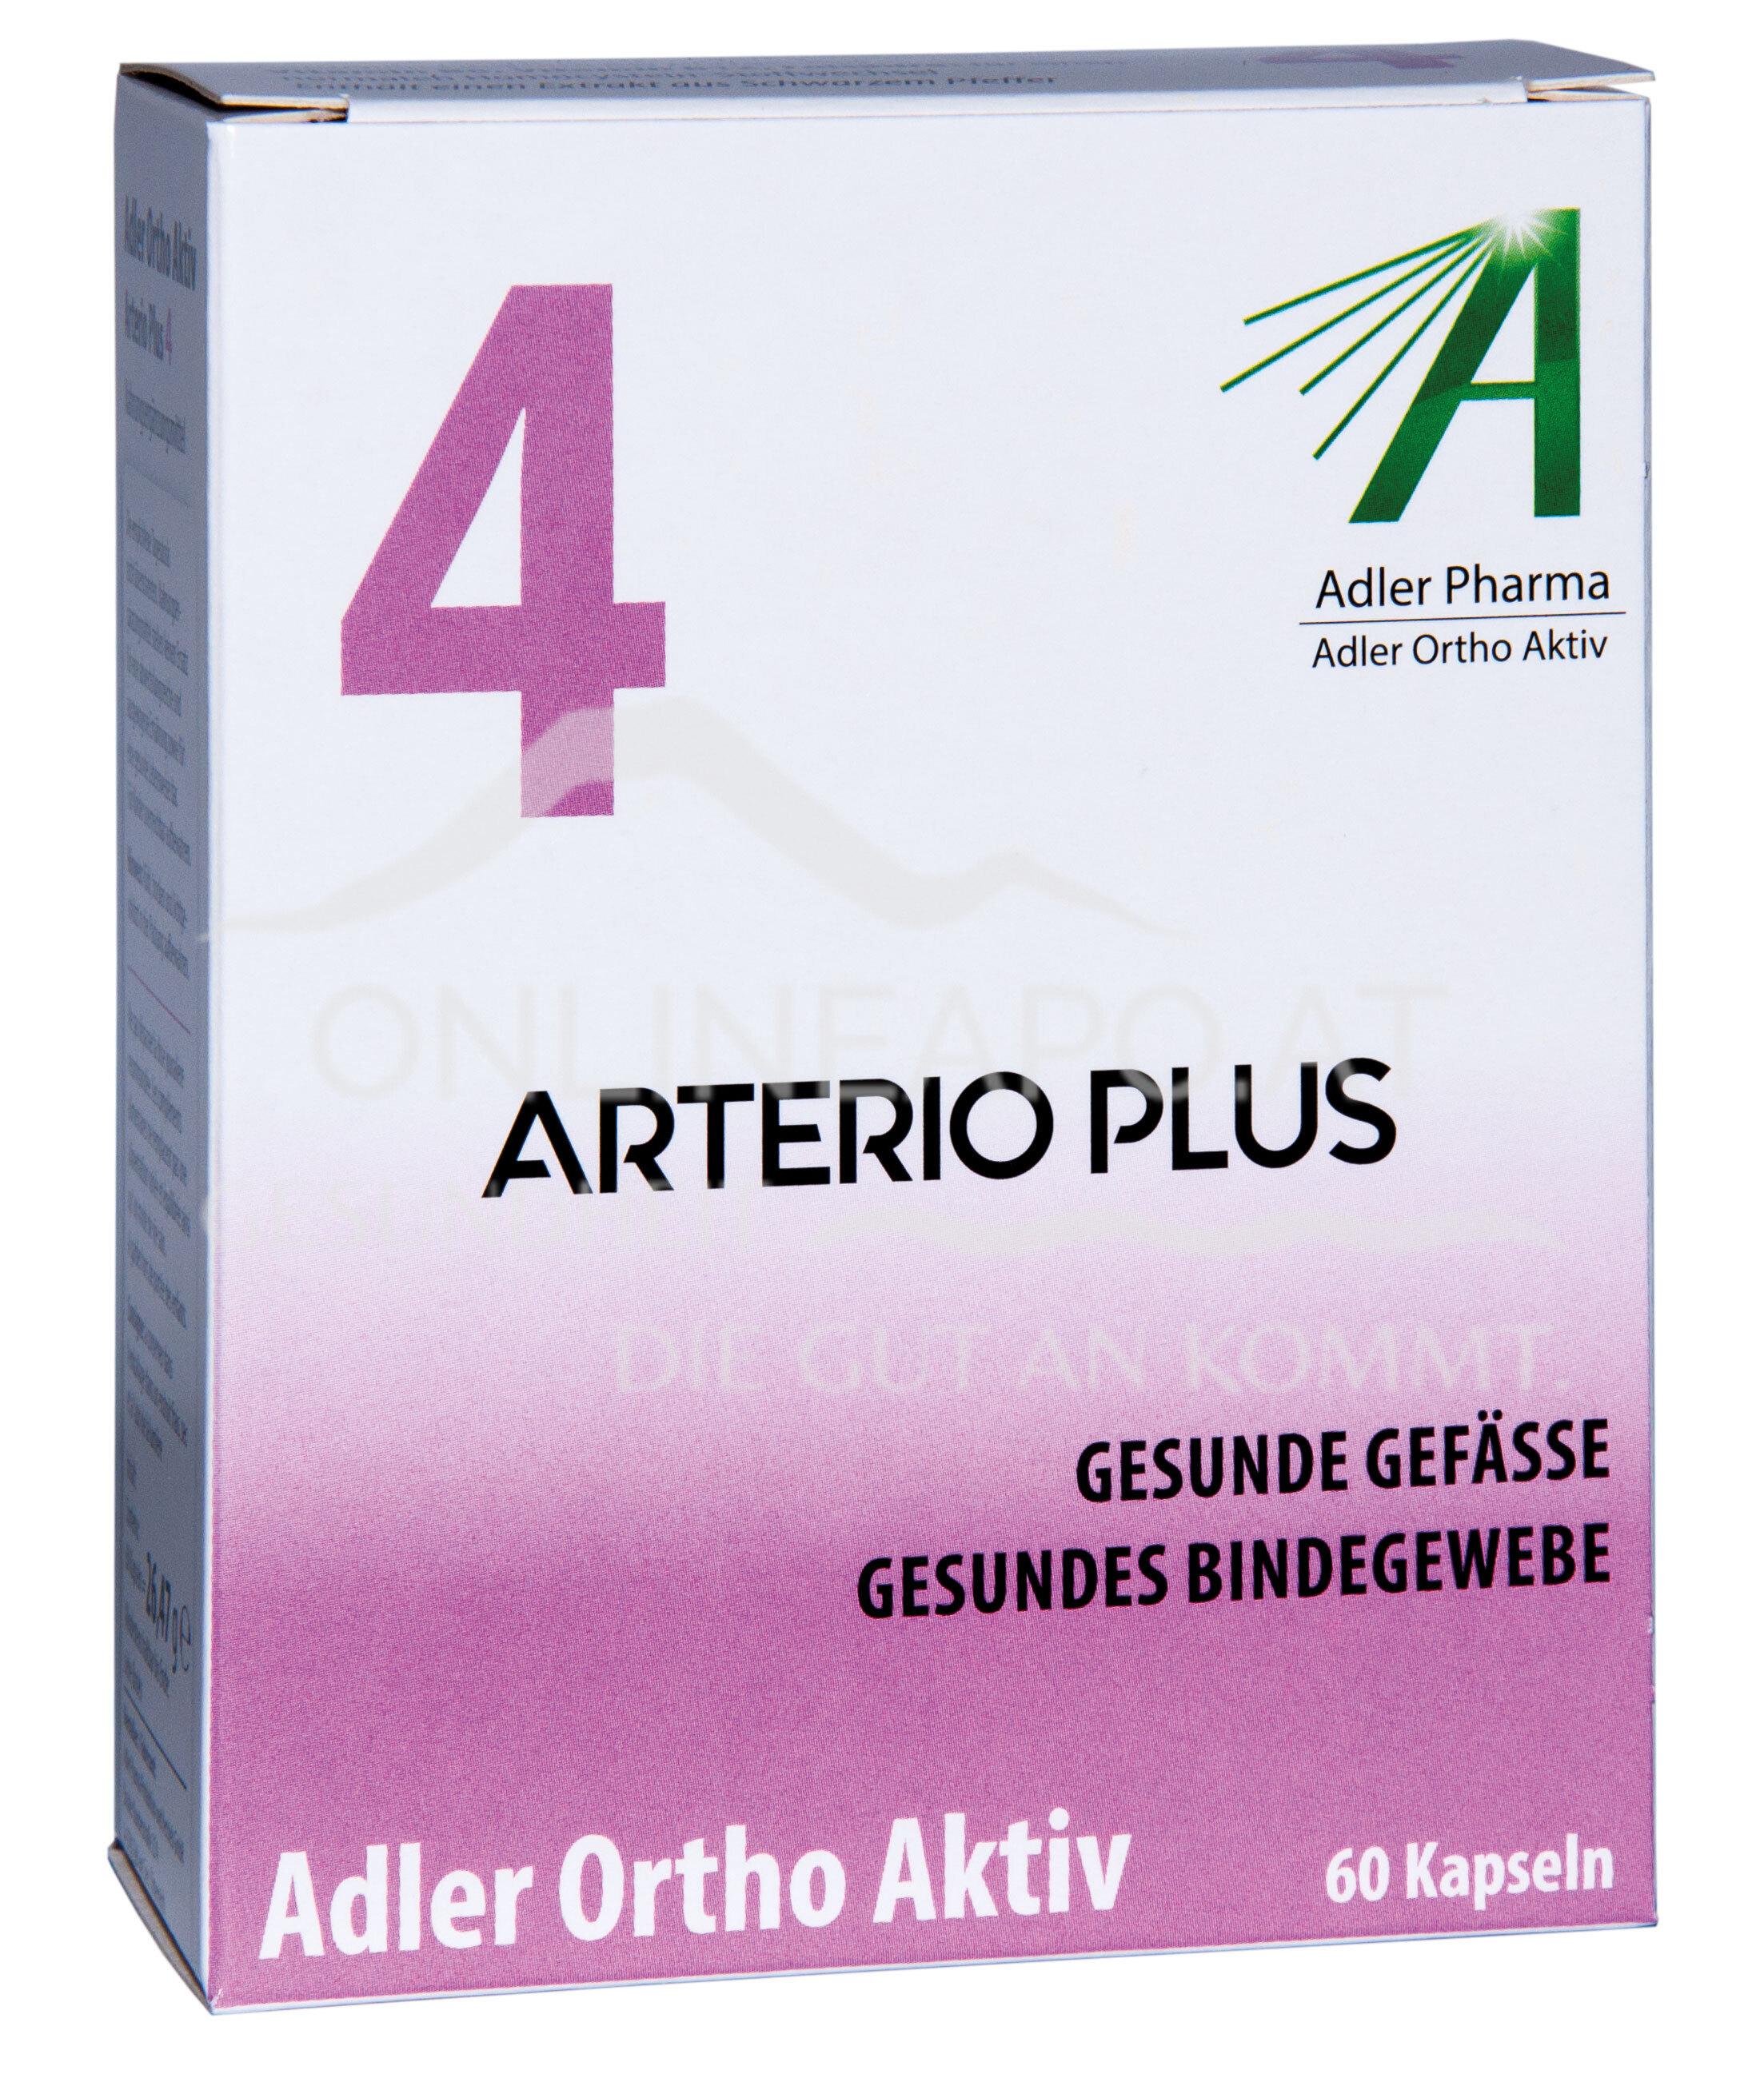 Adler Ortho Aktiv Nr. 4 Arterio Plus Kapseln